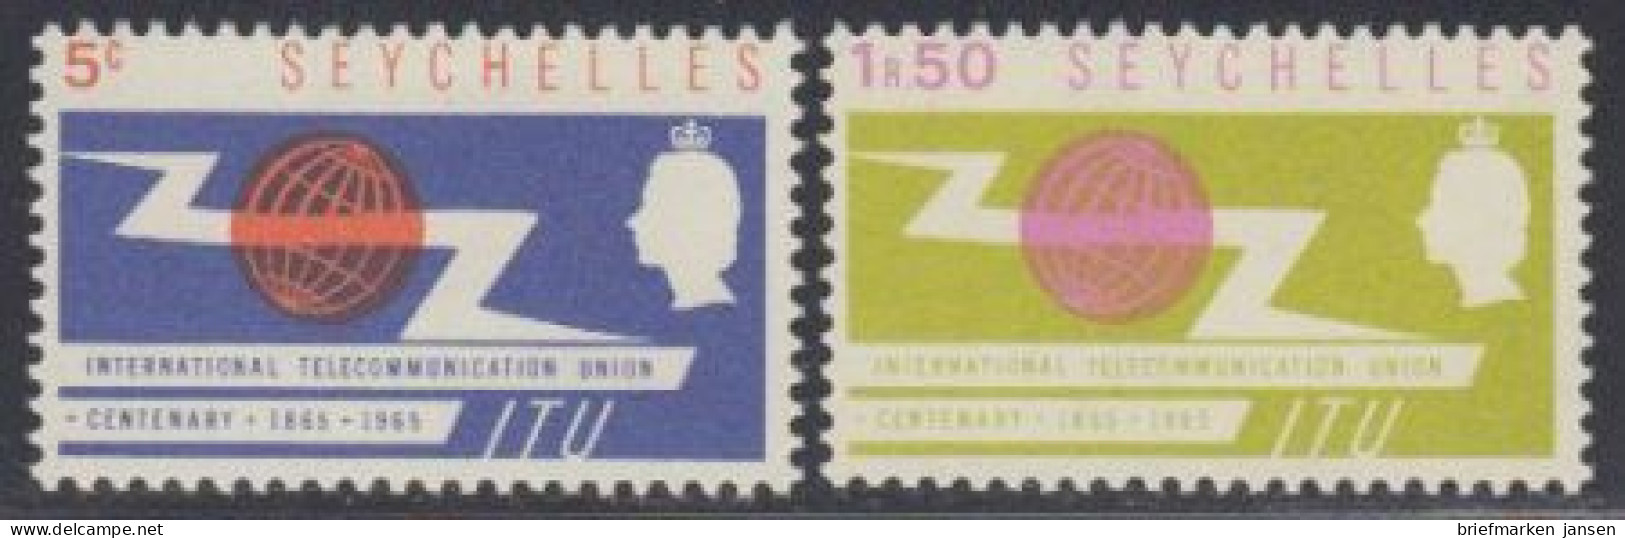 Seychellen Mi.Nr. 220-21 100J. Int. Fernmeldeunion (2 Werte) - Seychellen (1976-...)